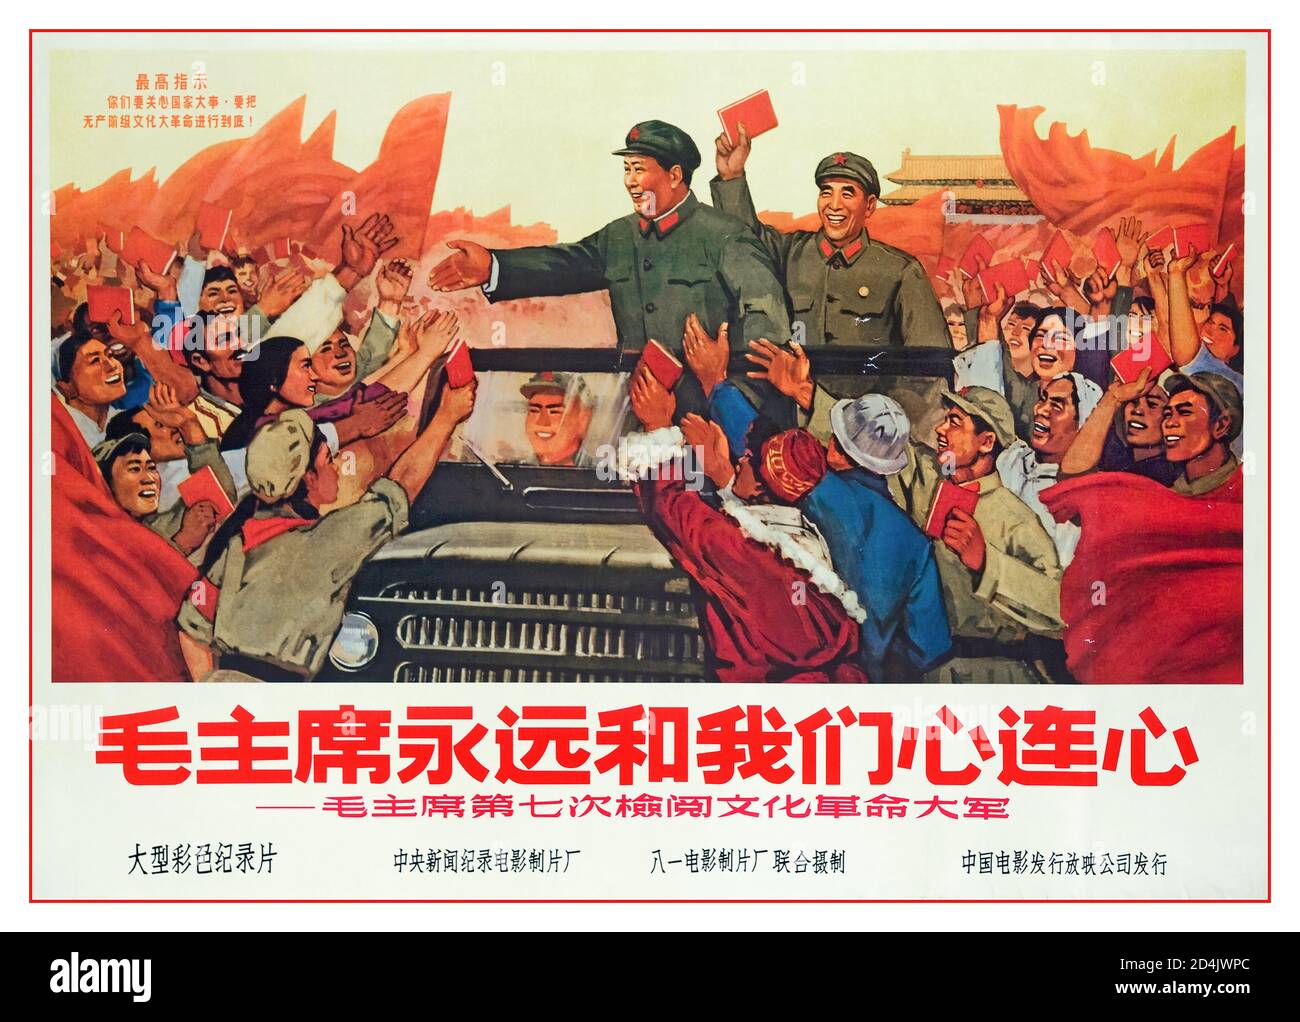 Affiche du président de l'affiche du millésime Mao Tsé-toung la Révolution culturelle, officiellement la Grande Révolution culturelle prolétarienne, était un mouvement sociopolitique en Chine de 1966 à 1976. Banque D'Images